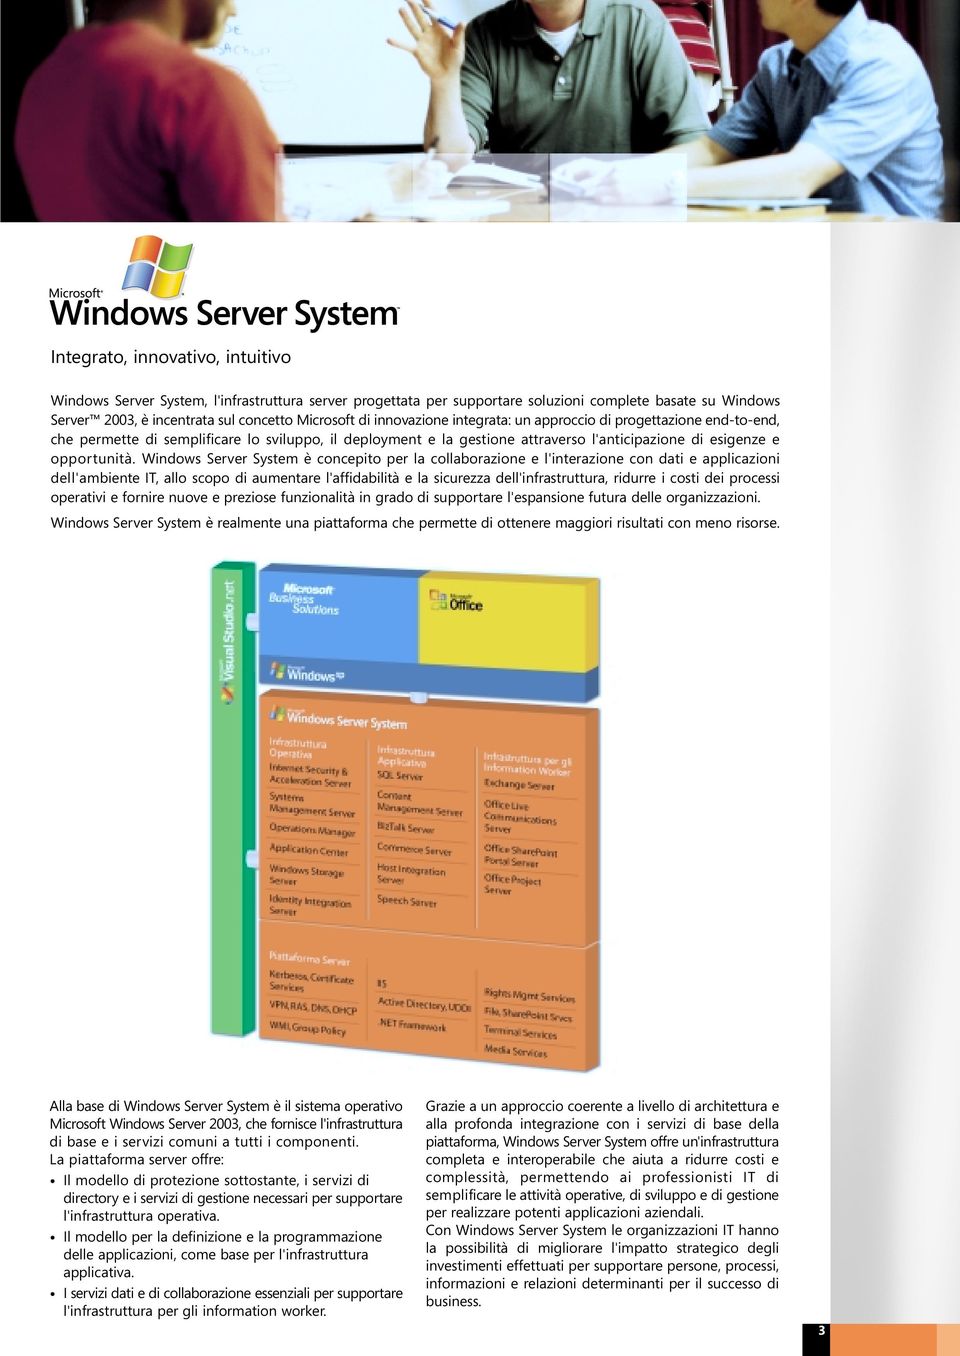 Windows Server System è concepito per la collaborazione e l'interazione con dati e applicazioni dell'ambiente IT, allo scopo di aumentare l'affidabilità e la sicurezza dell'infrastruttura, ridurre i